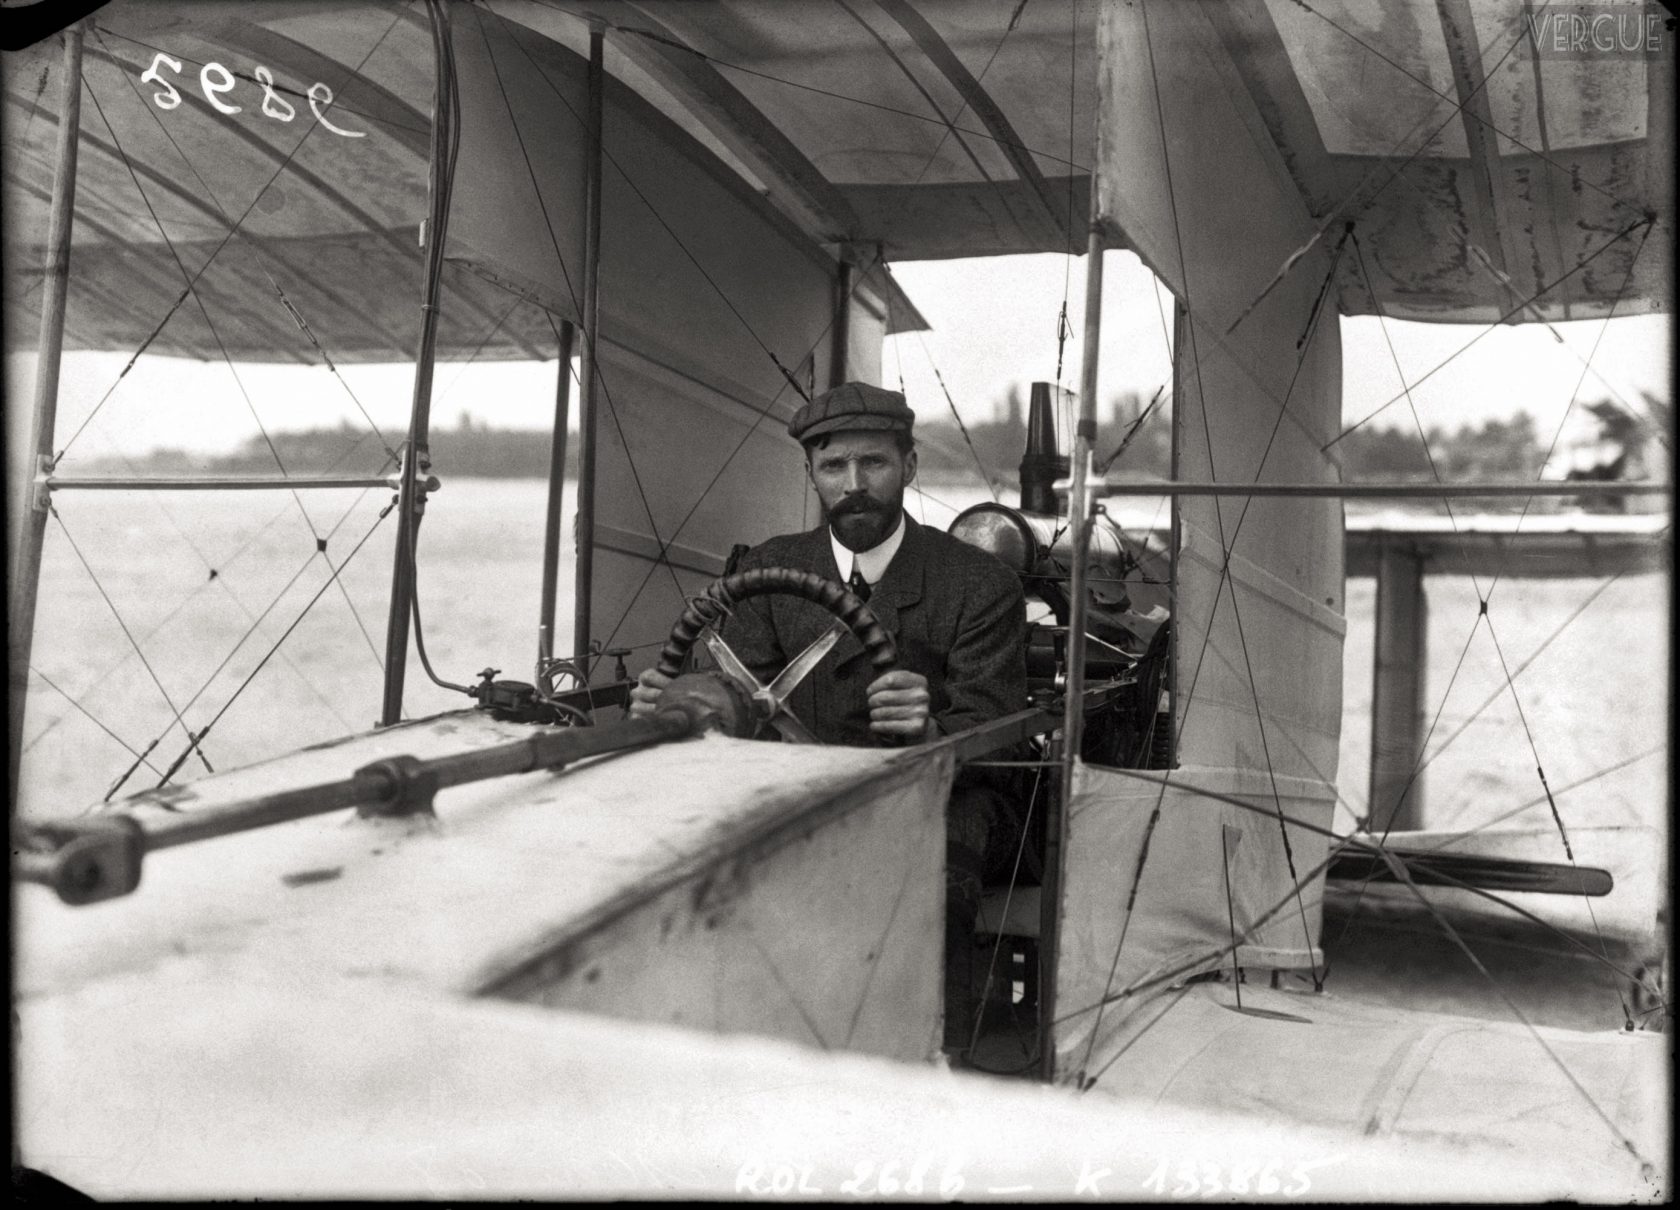 Самые быстрые самолеты в мире. Часть 2. Легкий самолет Voisin-Farman No.1, Франция, 1907